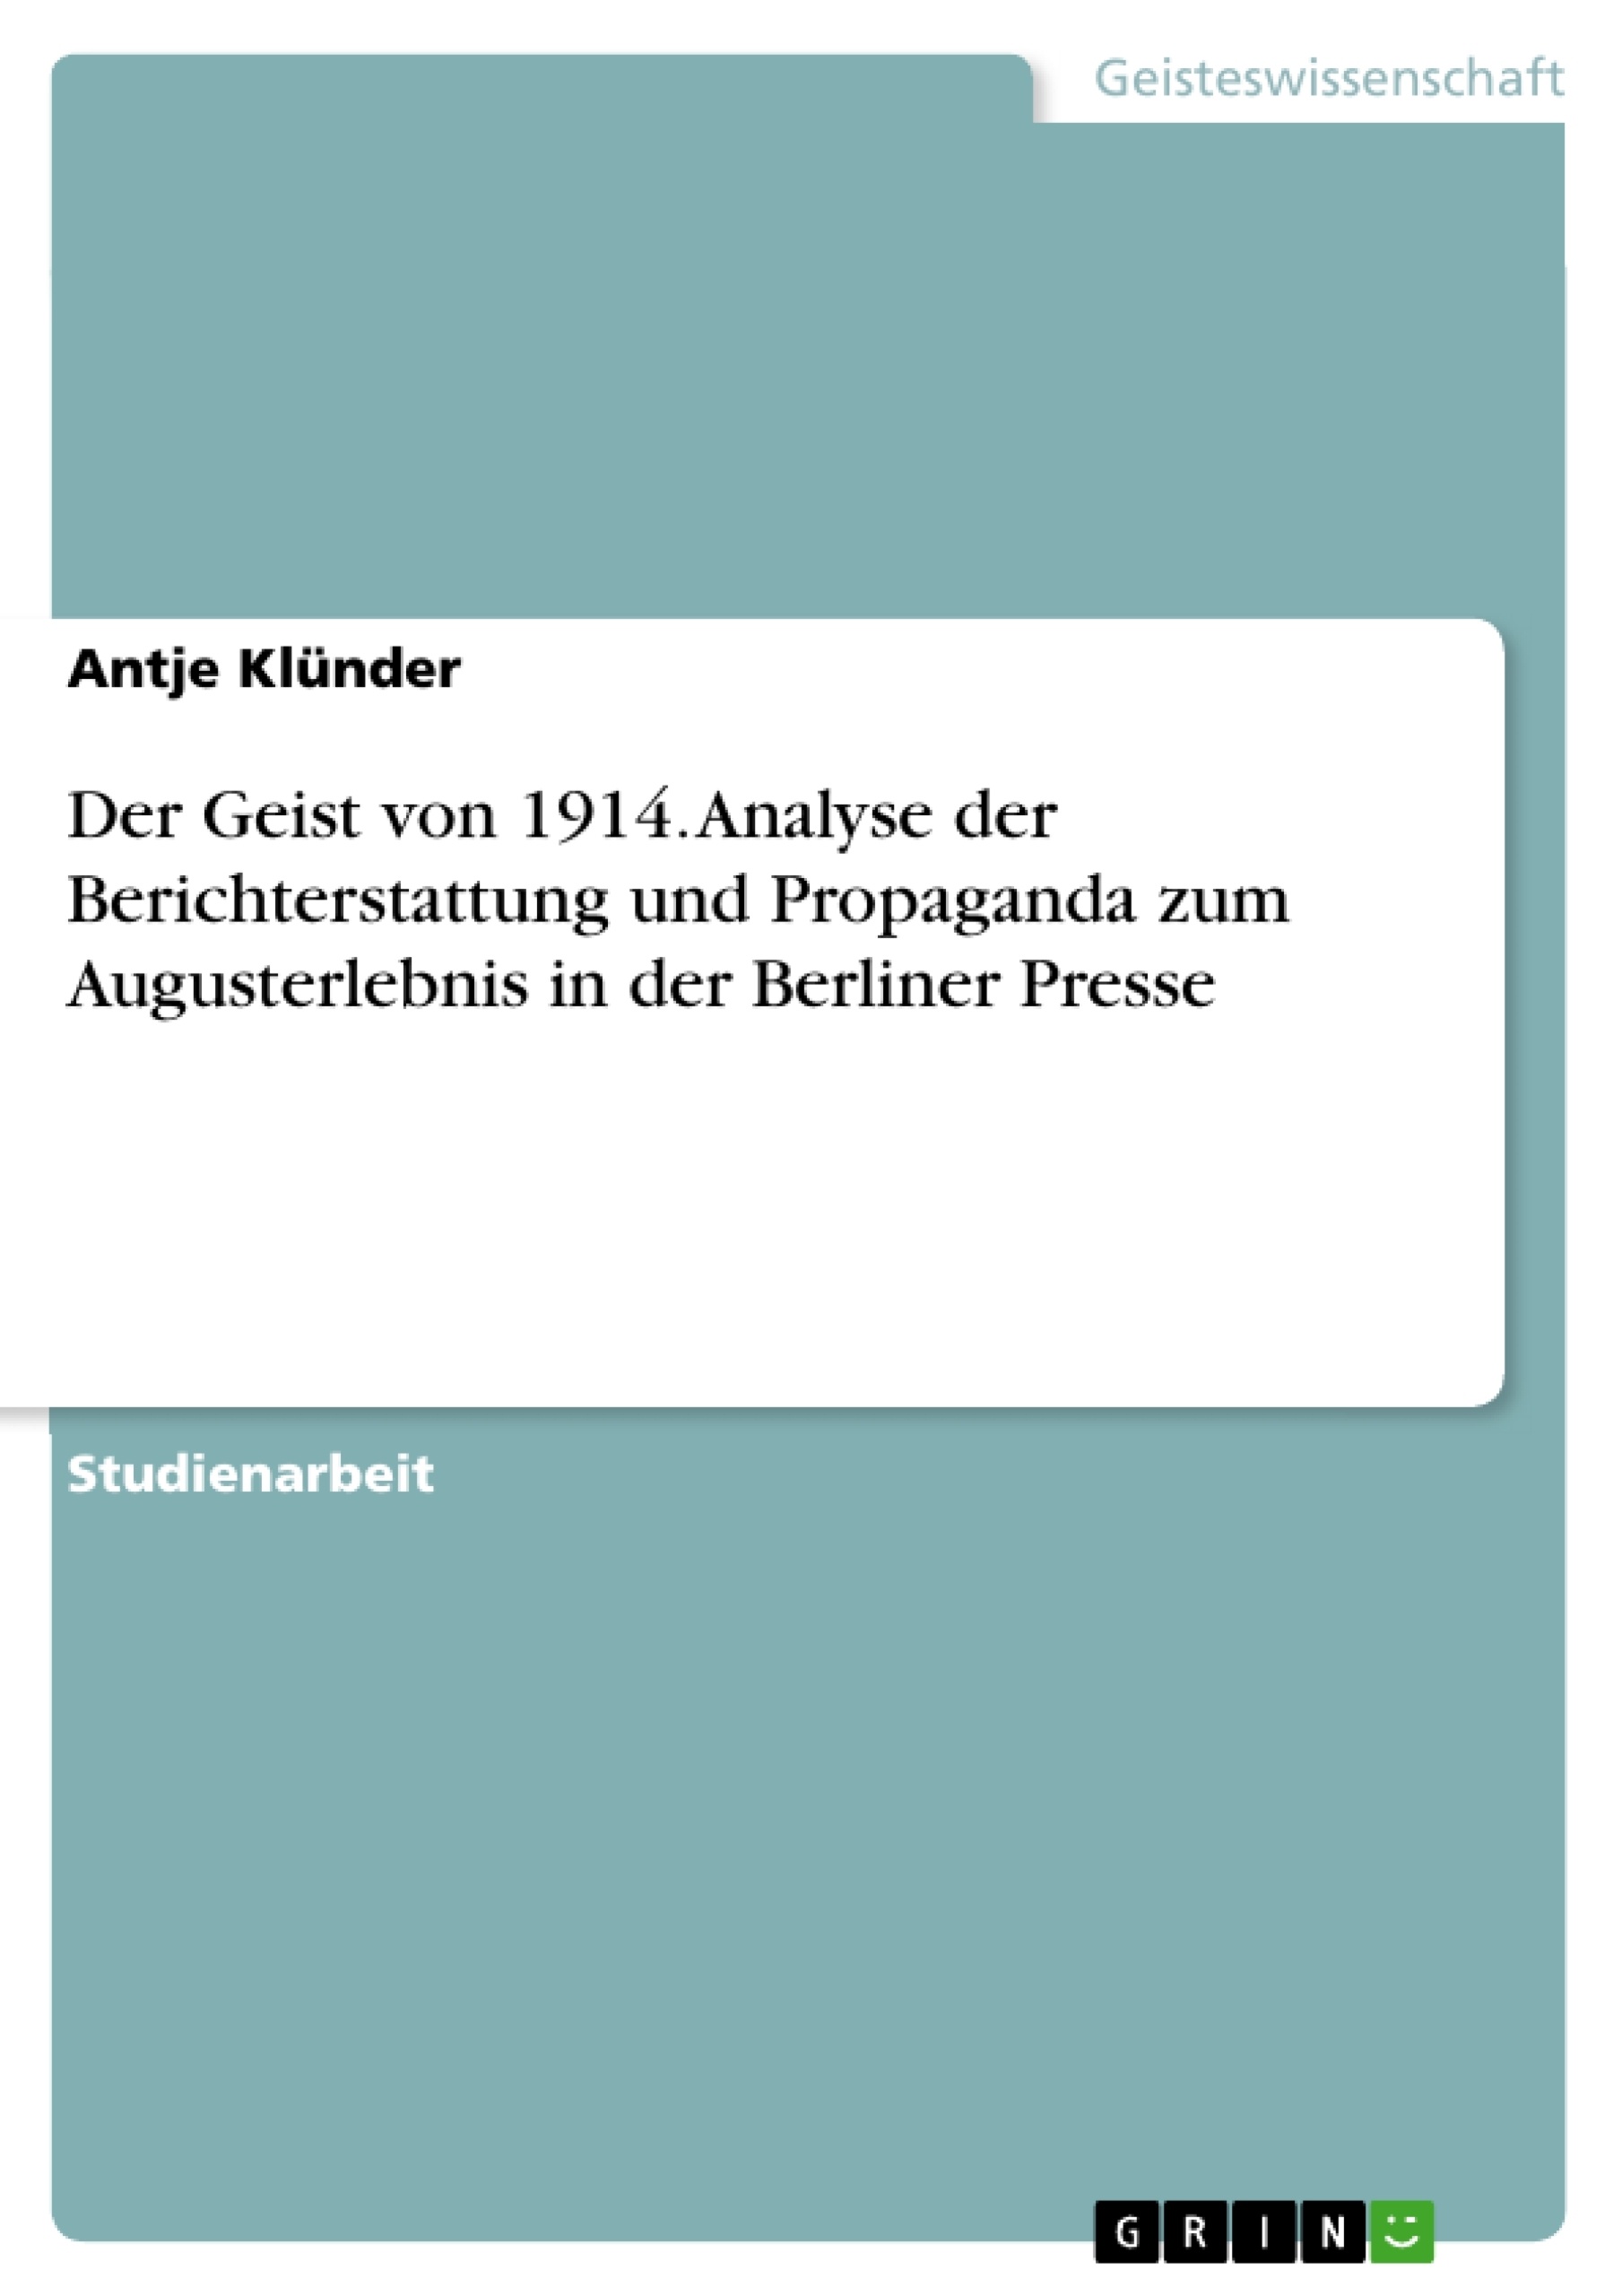 Title: Der Geist von 1914. Analyse der Berichterstattung und Propaganda zum Augusterlebnis in der Berliner Presse